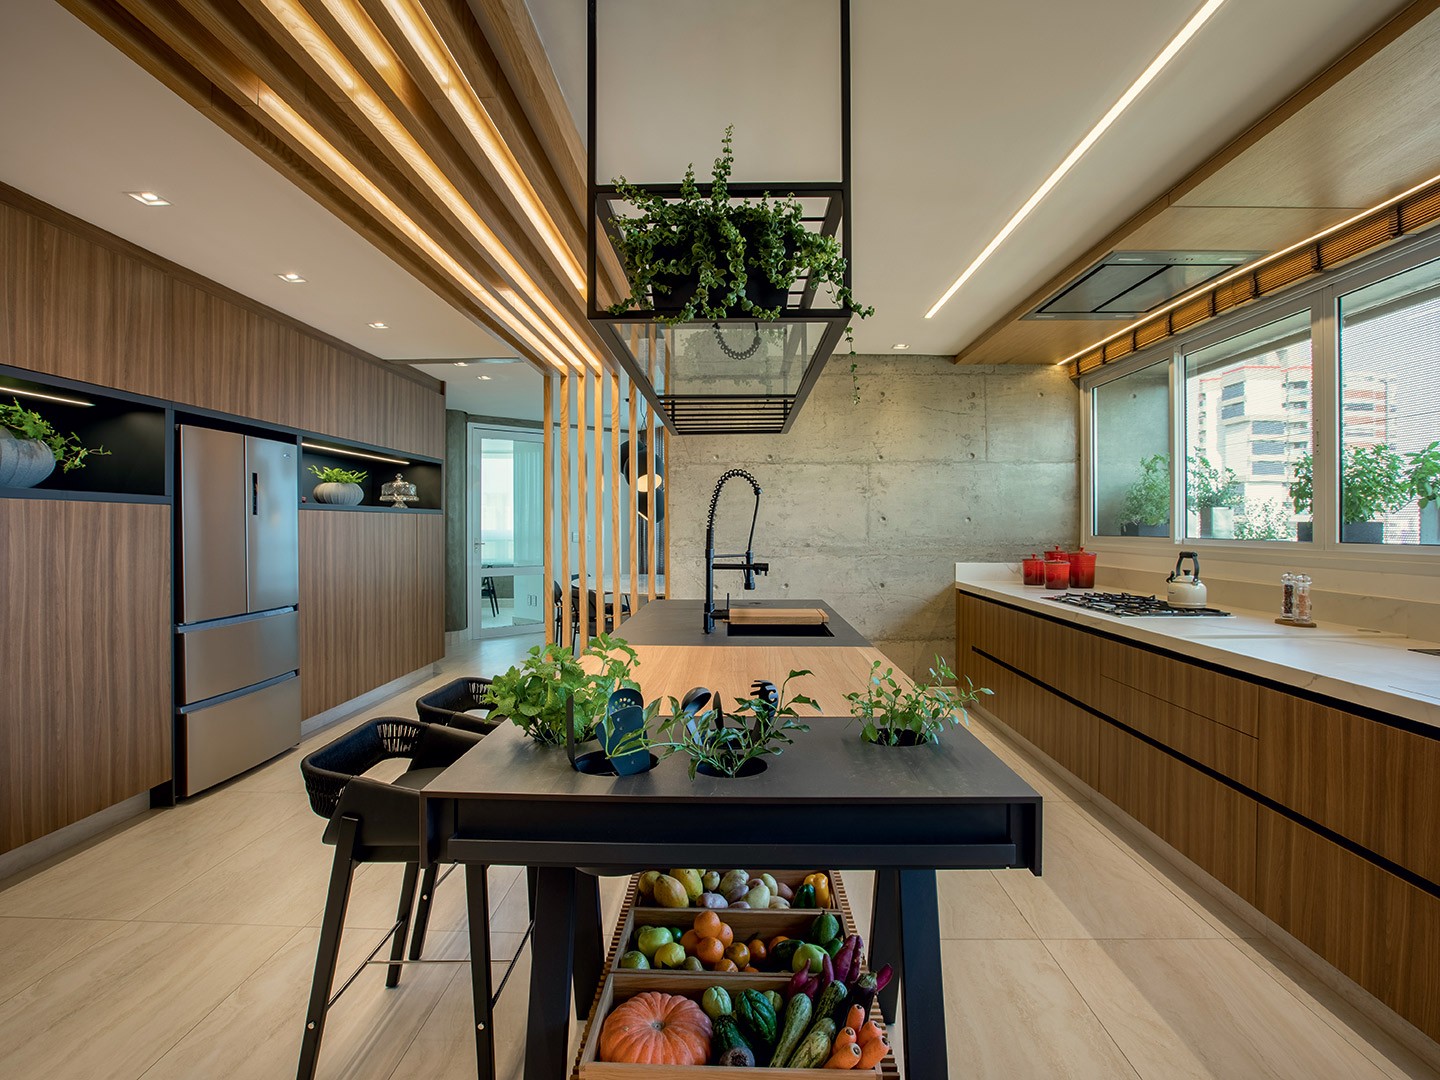 Cozinha é protagonista neste apartamento de 380m² (Foto: J. Vilhora/divulgação)